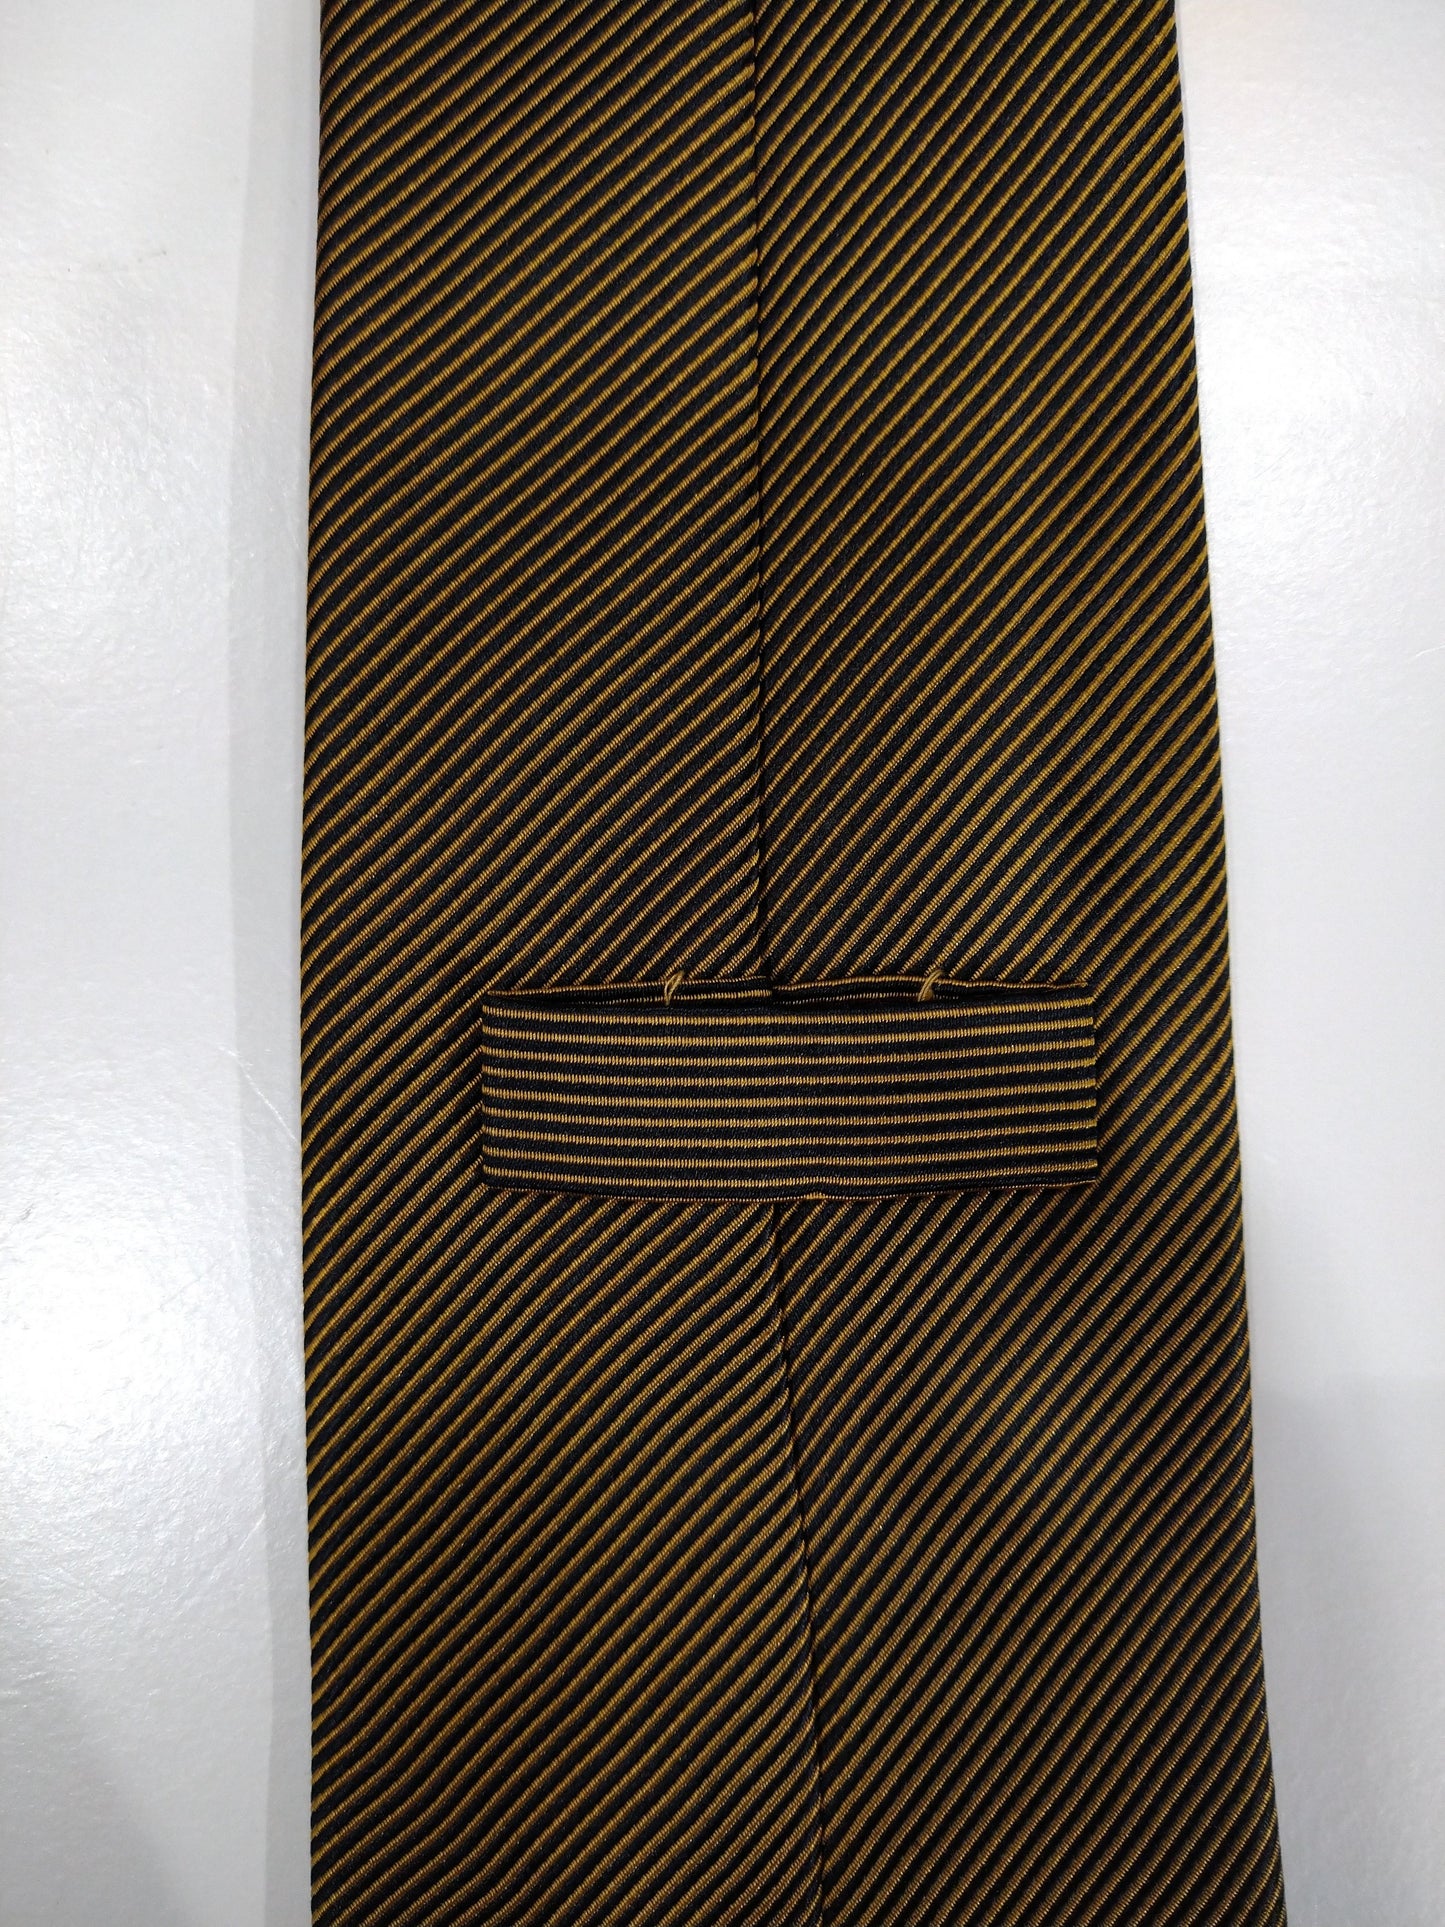 Zijde stropdas. Geel goud zwart motief.